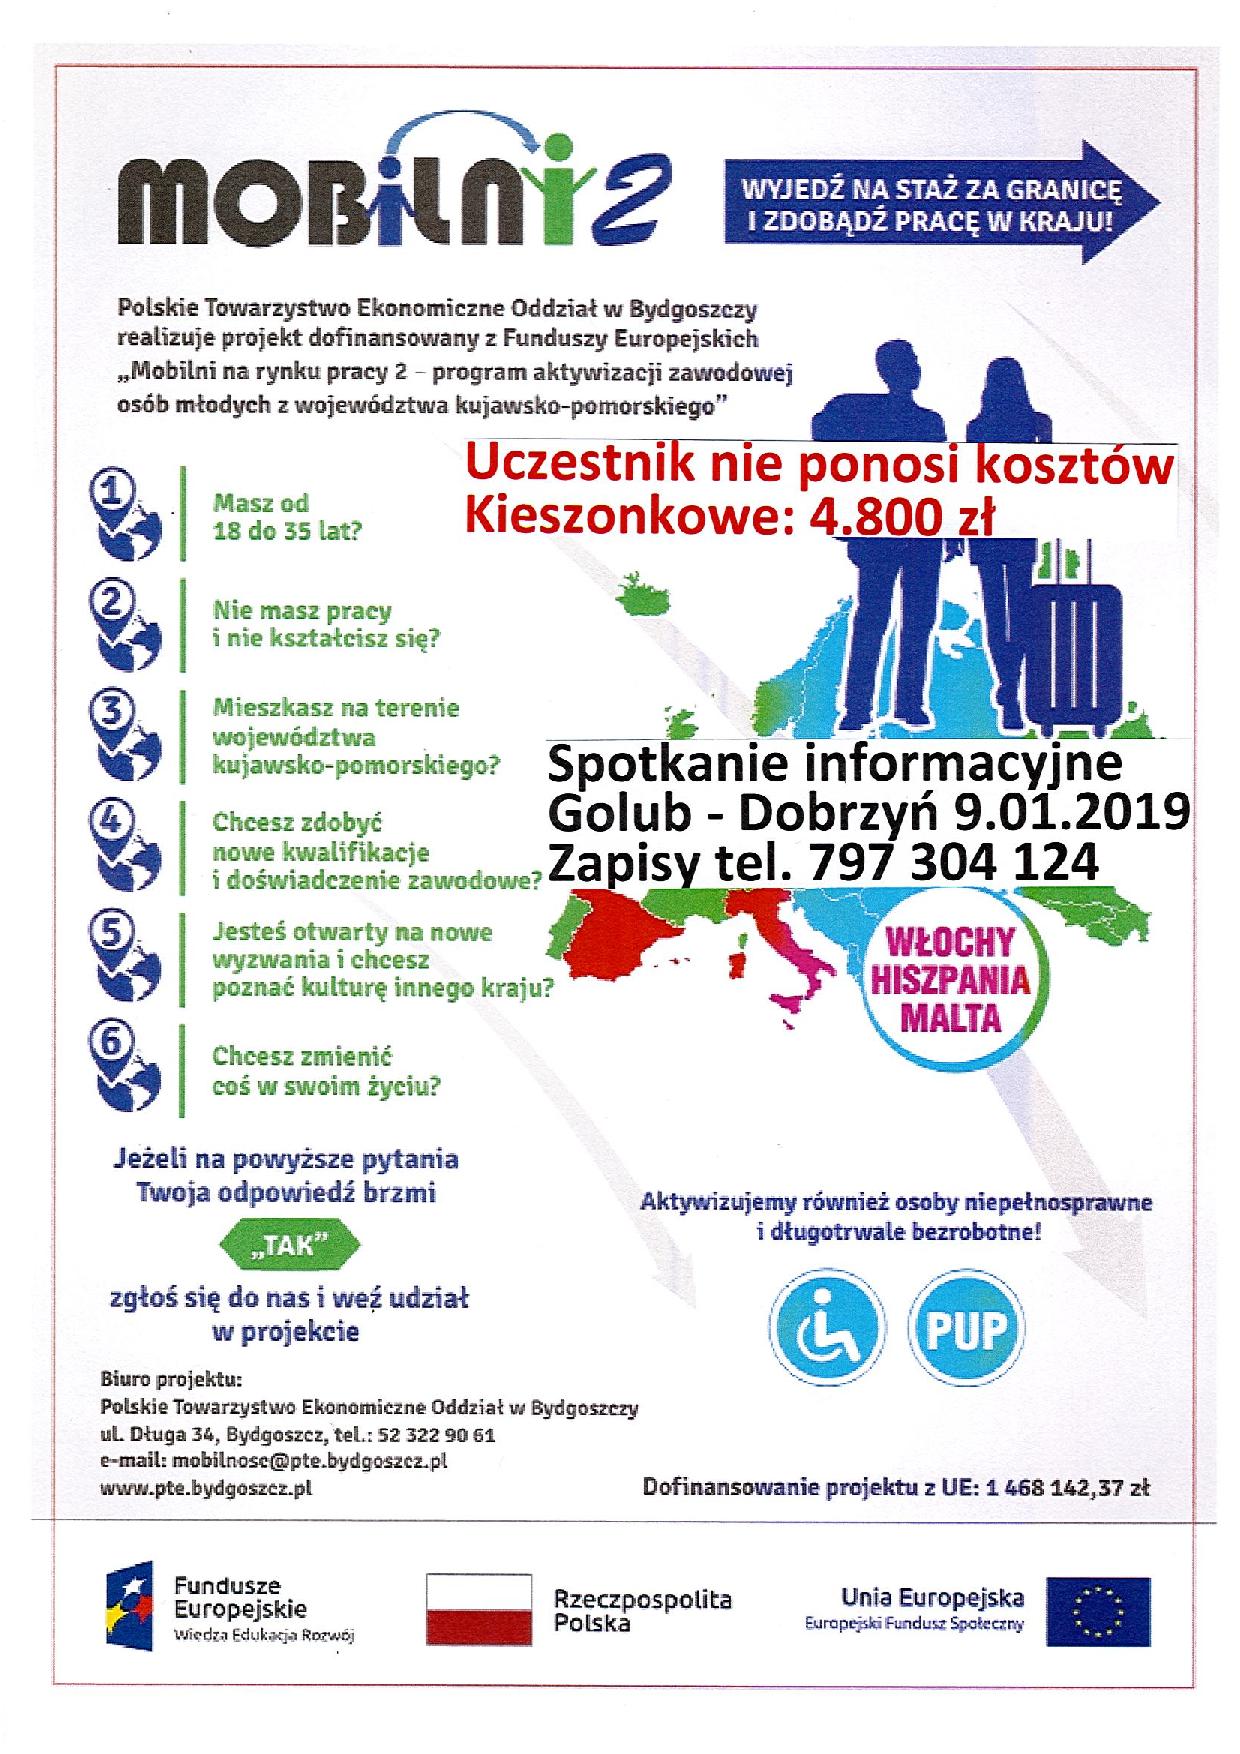 Plakat Golub-Dobrzyń 9.01.2019 Mobilni2